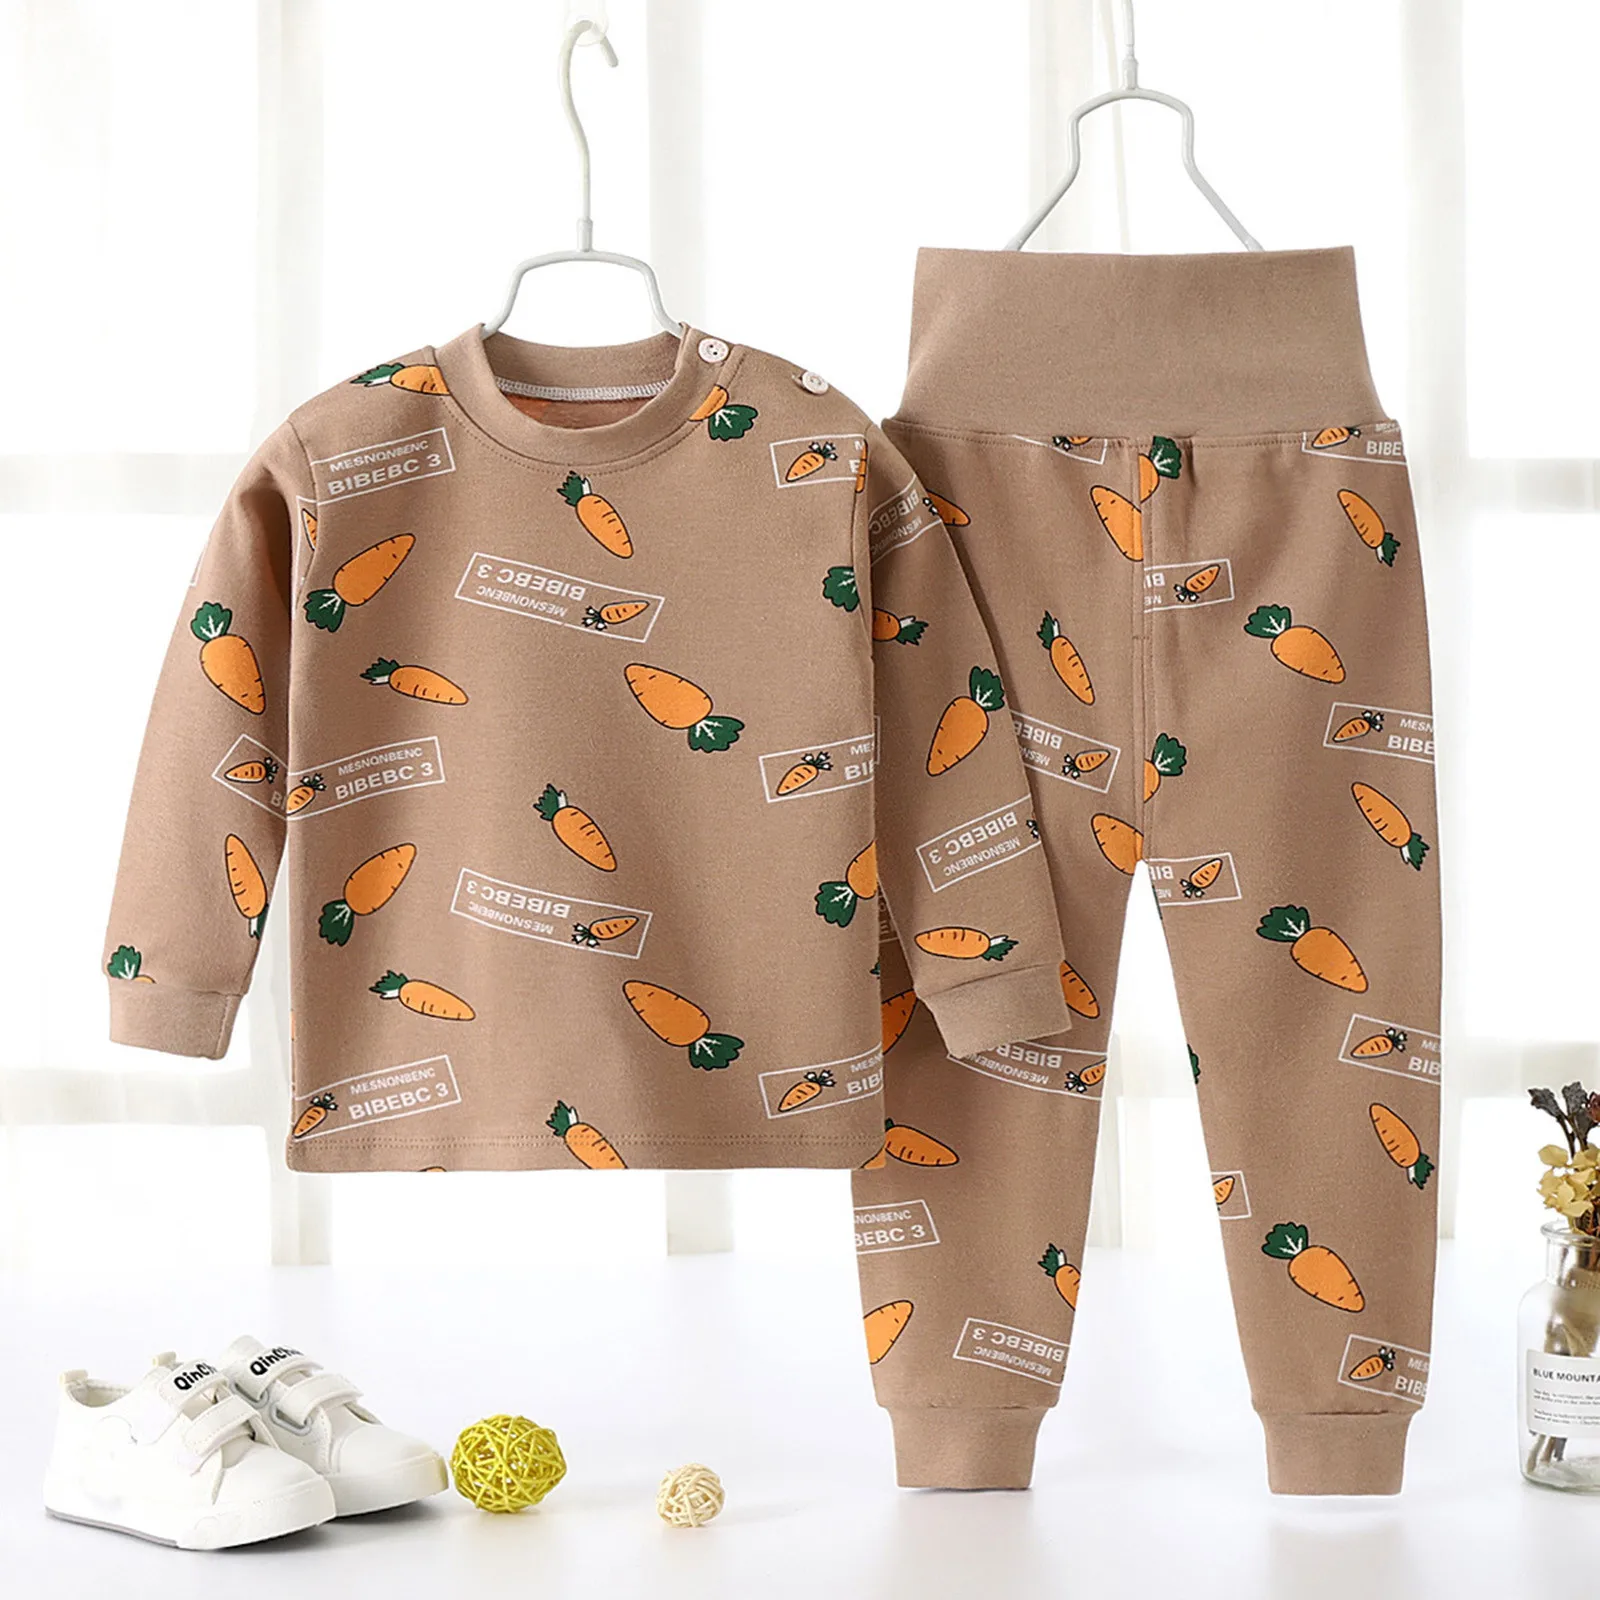 Çocuk Çocuk Giyim Setleri Uzun Kollu Takım Elbise Bebek Erkek Kız İç Çamaşırı Seti Yumuşak Pamuklu Loungewear Ev Giysileri Pijama Pijama